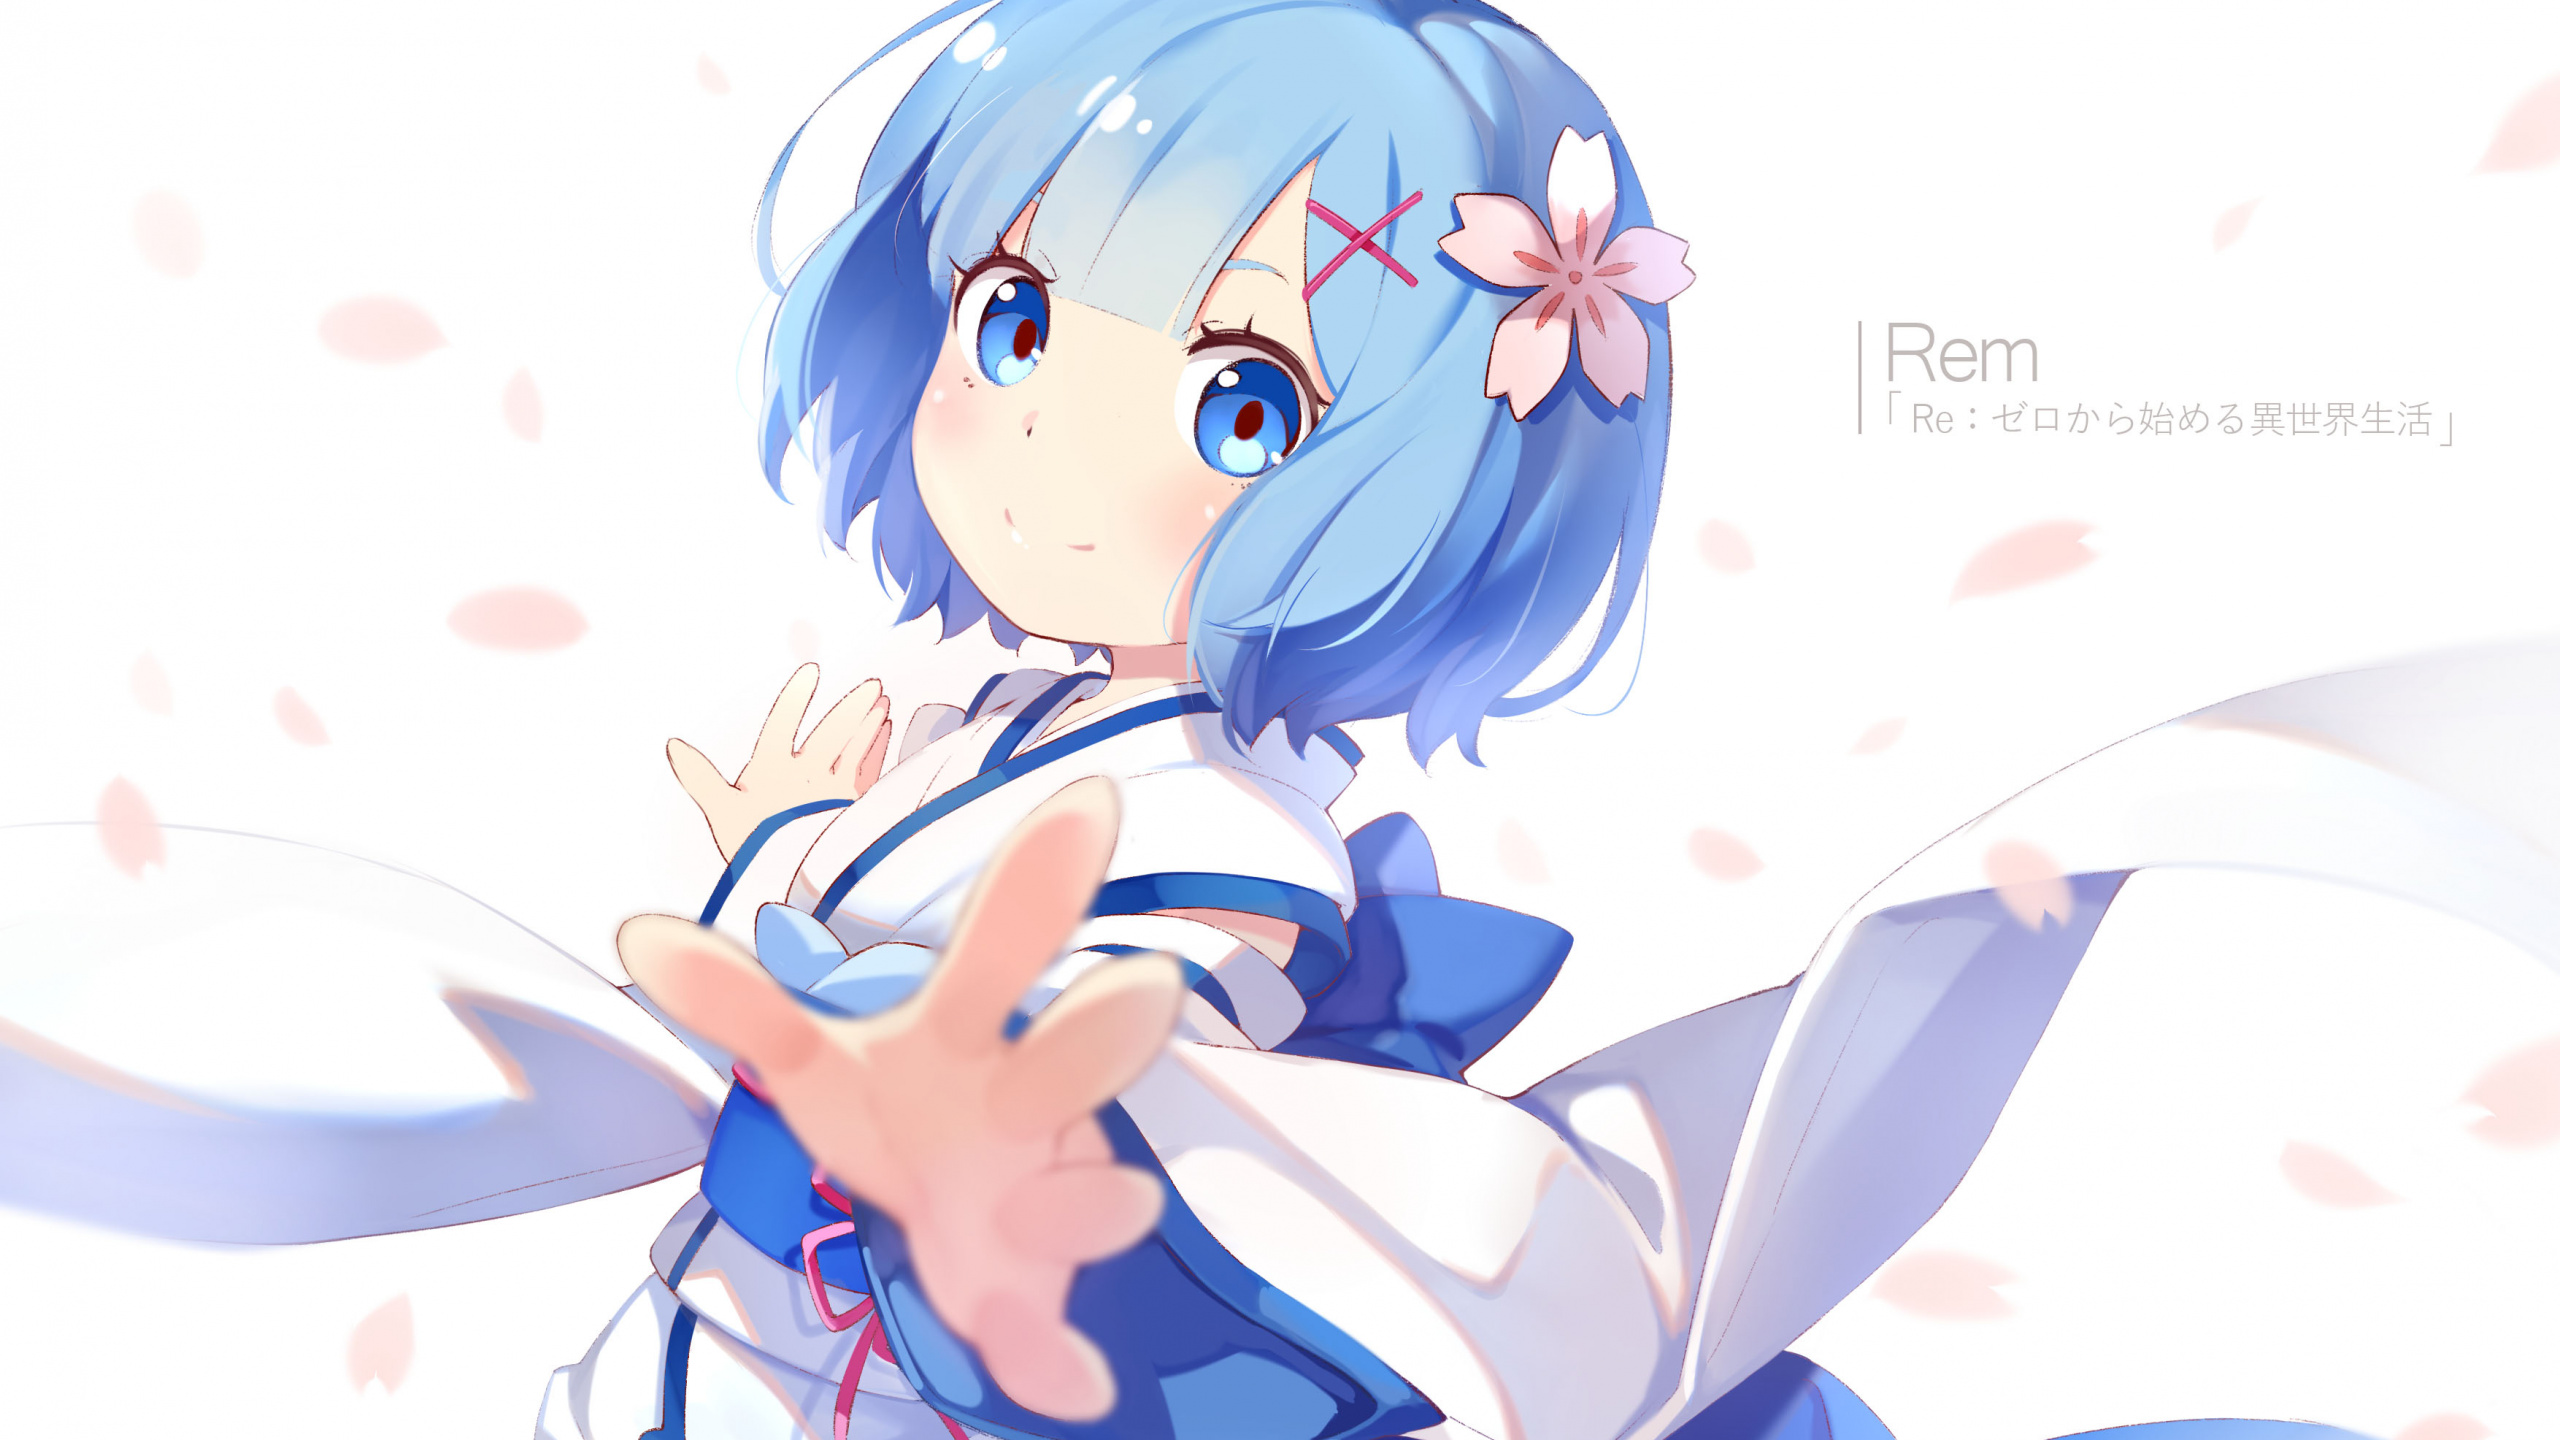 Mädchen im Blauen Kleid Anime-Charakter. Wallpaper in 2560x1440 Resolution